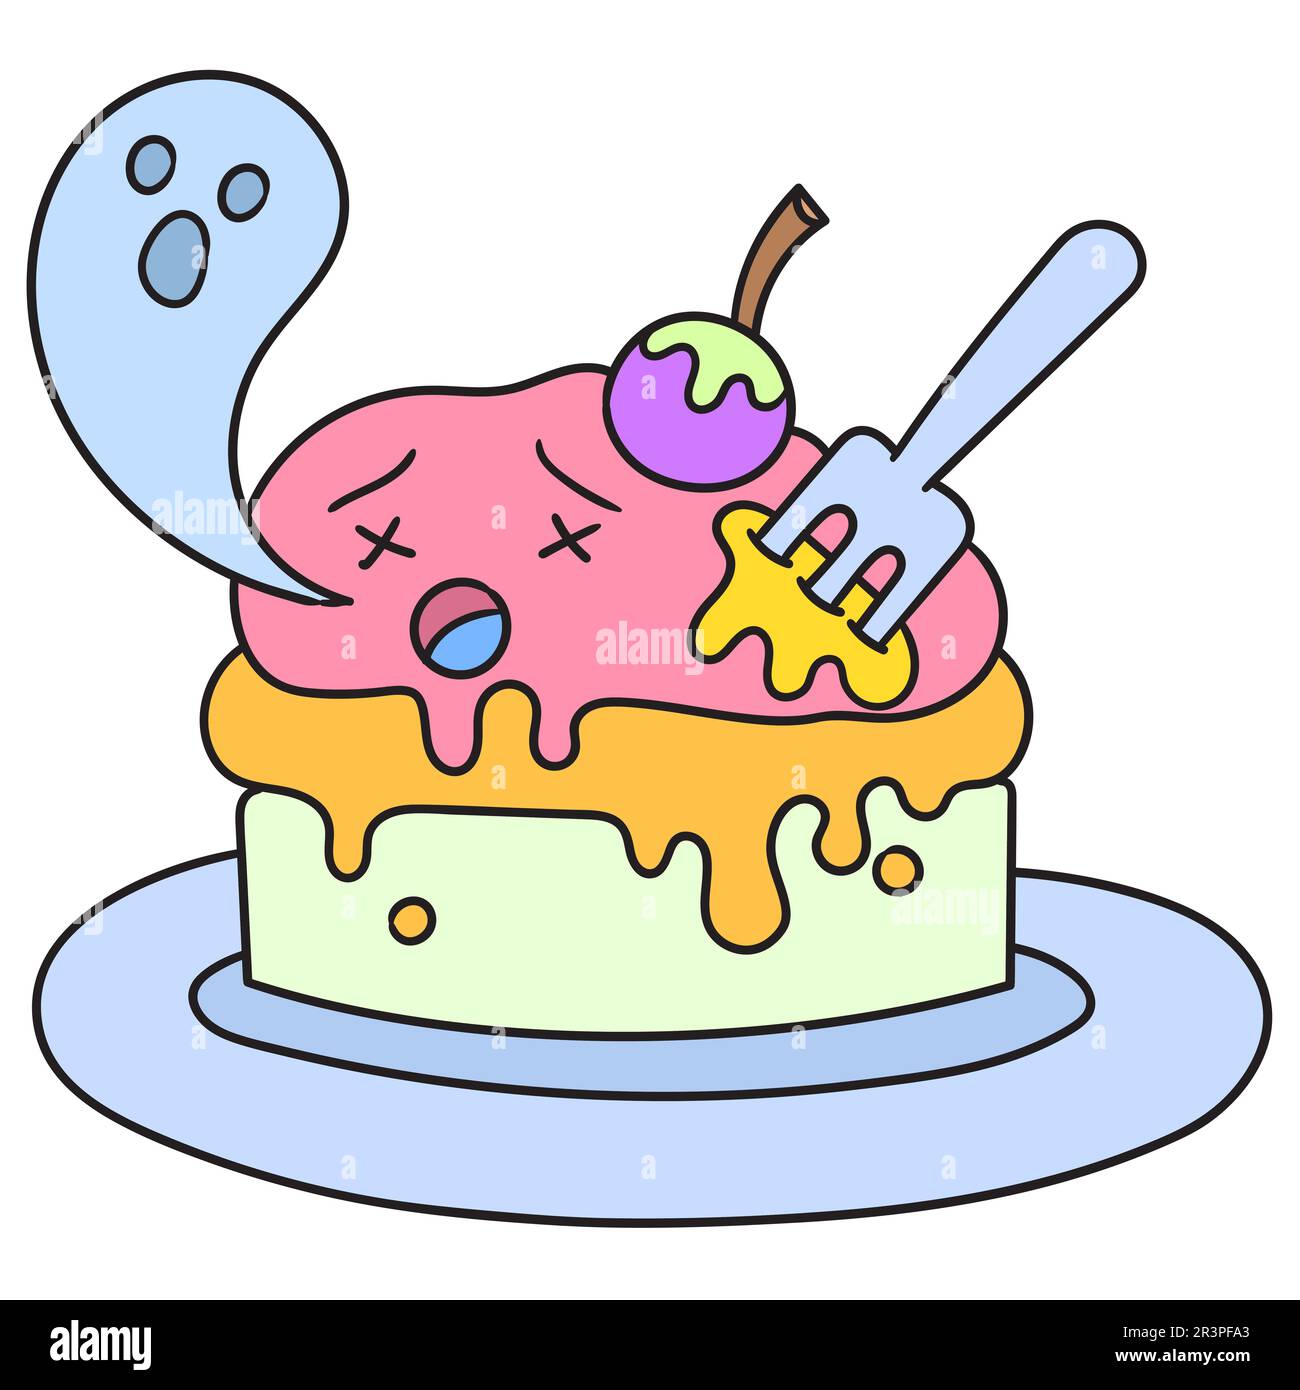 Emoticon cake Banque d'images détourées - Alamy